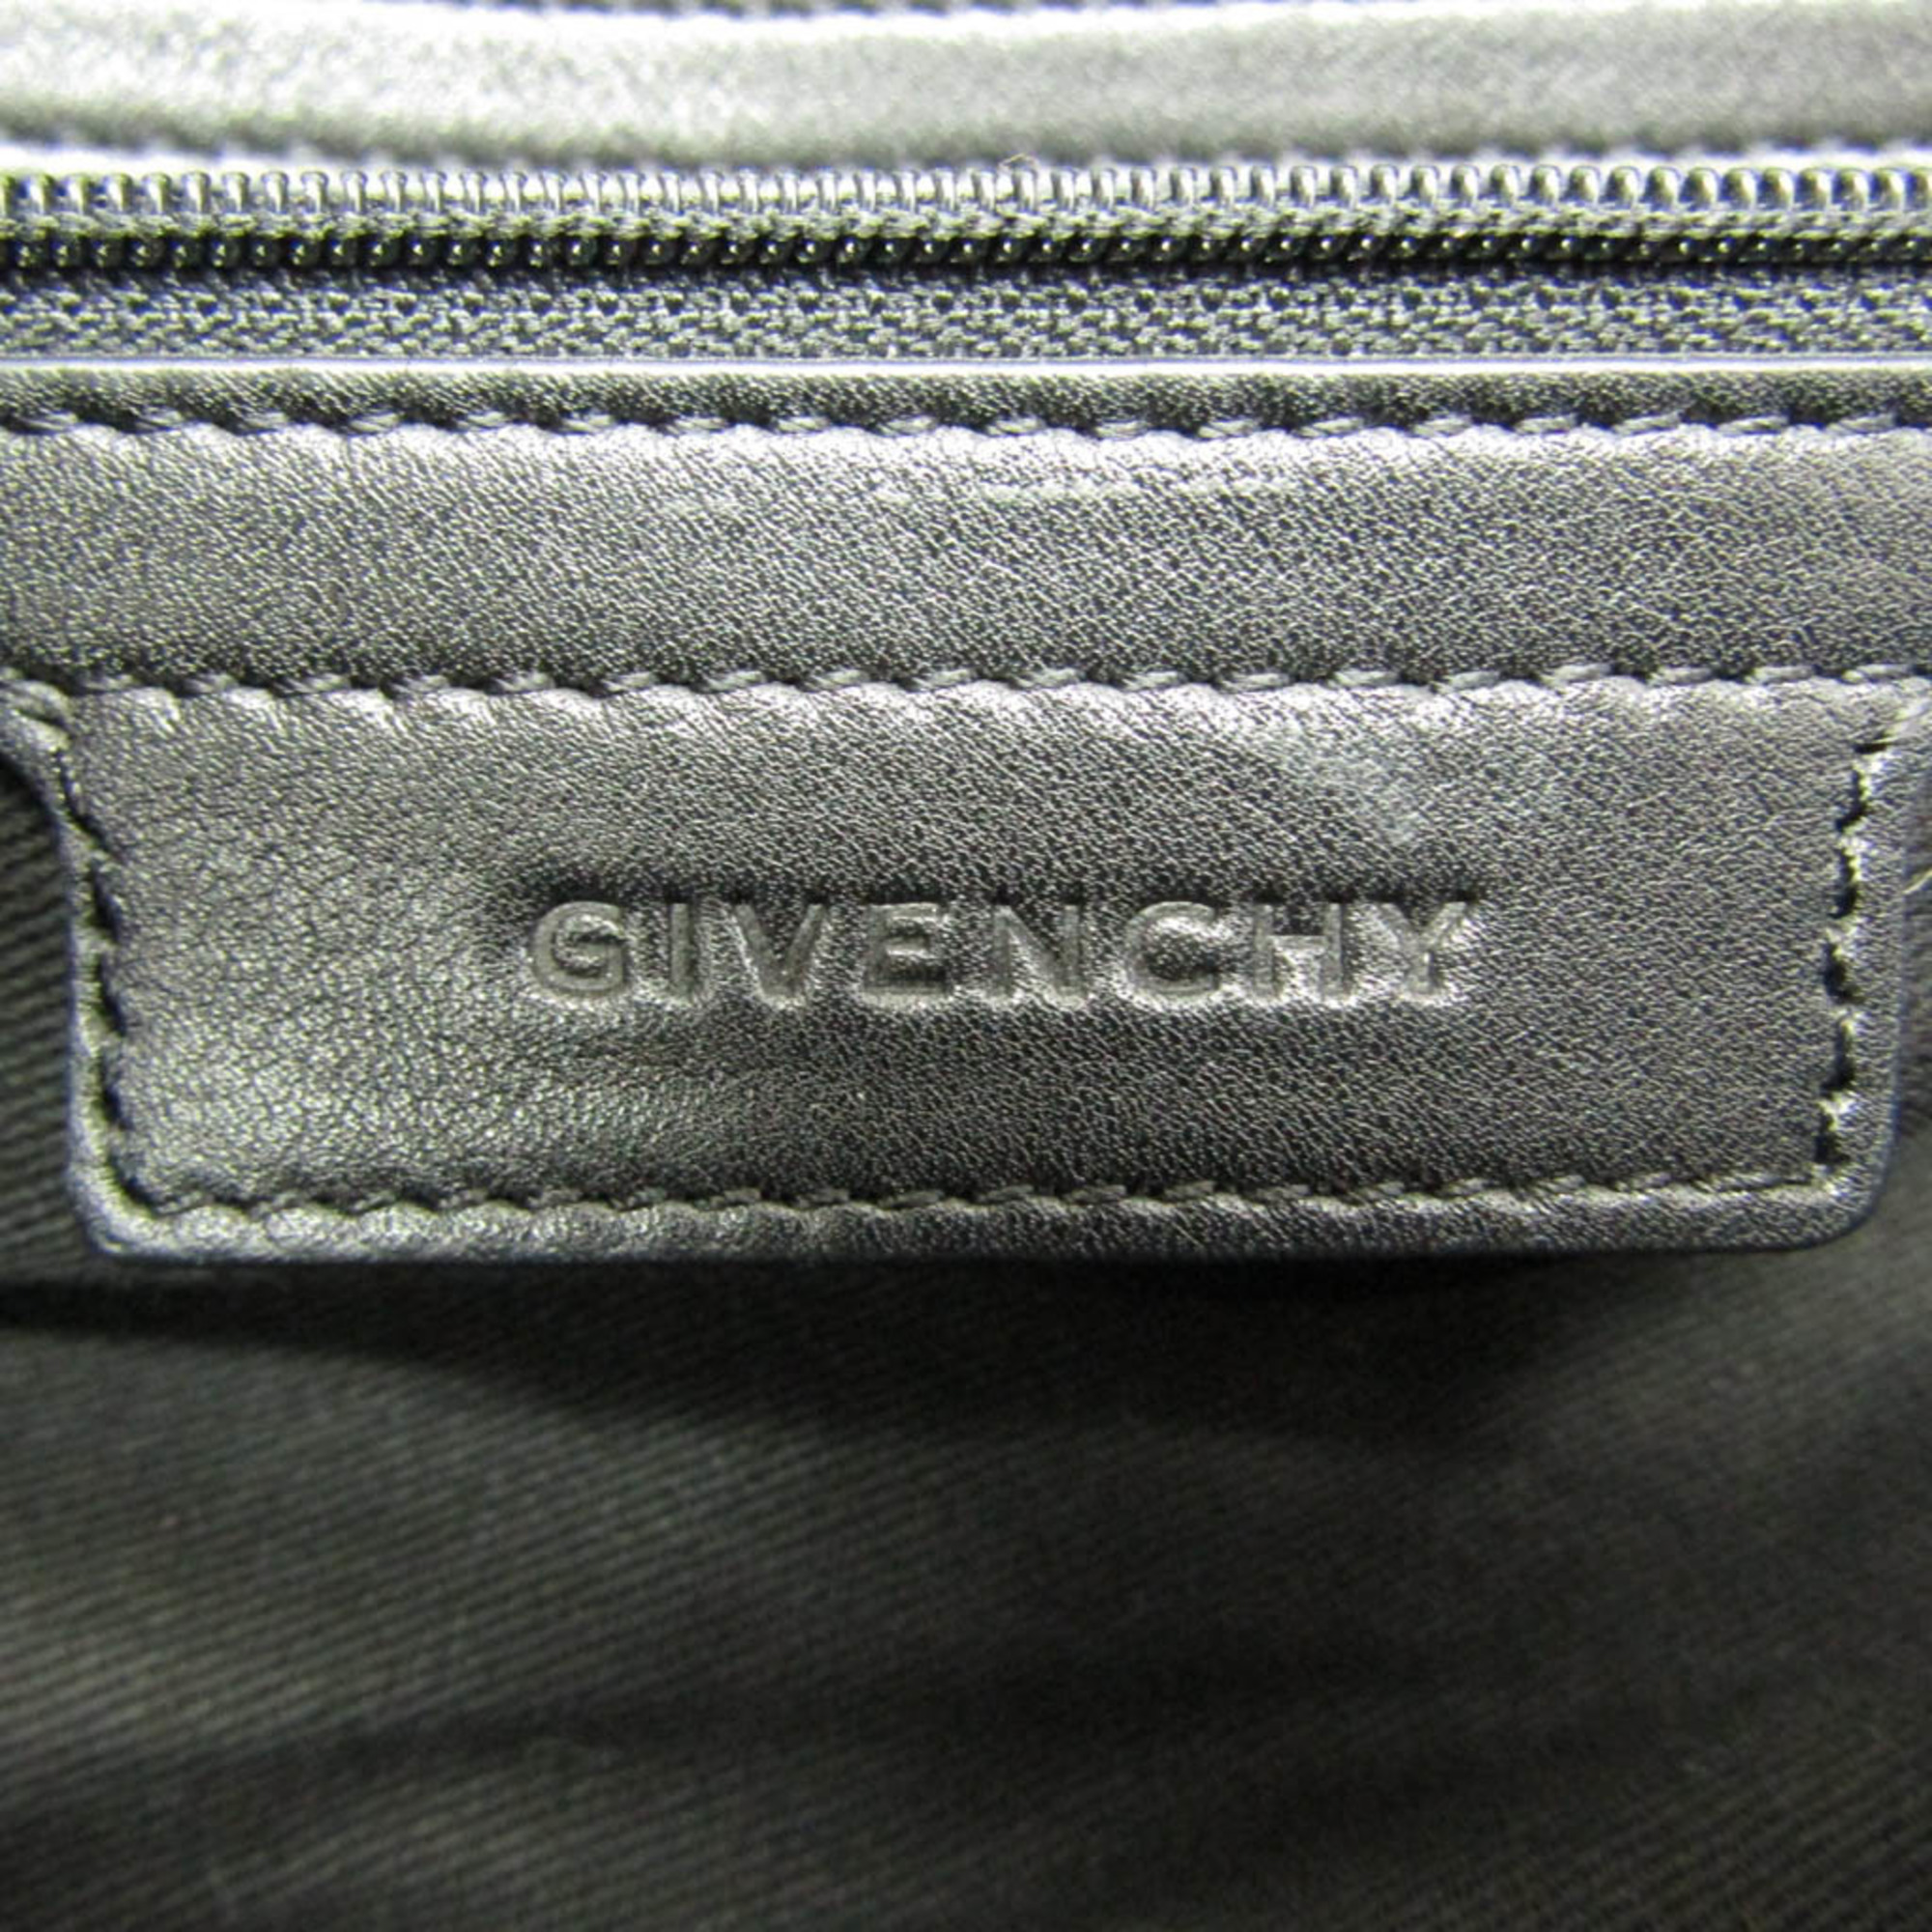 ジバンシィ(Givenchy) ナイチンゲール 星スタッズ レディース レザー 